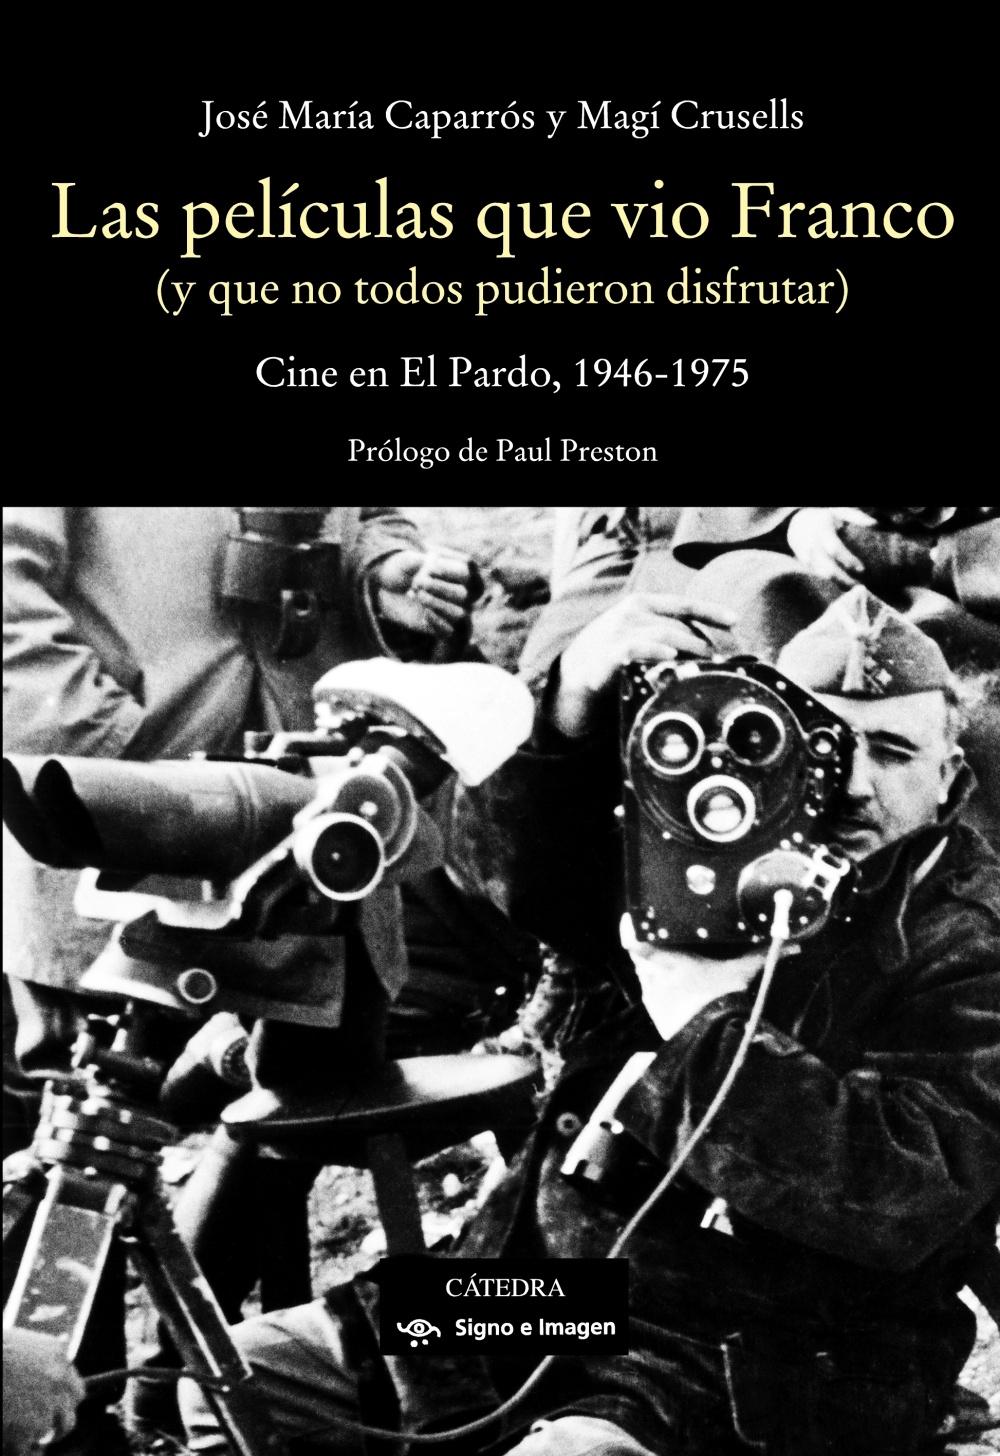 LAS PELICULAS QUE VIO FRANCO "Cine en El Pardo, 1946-1975"